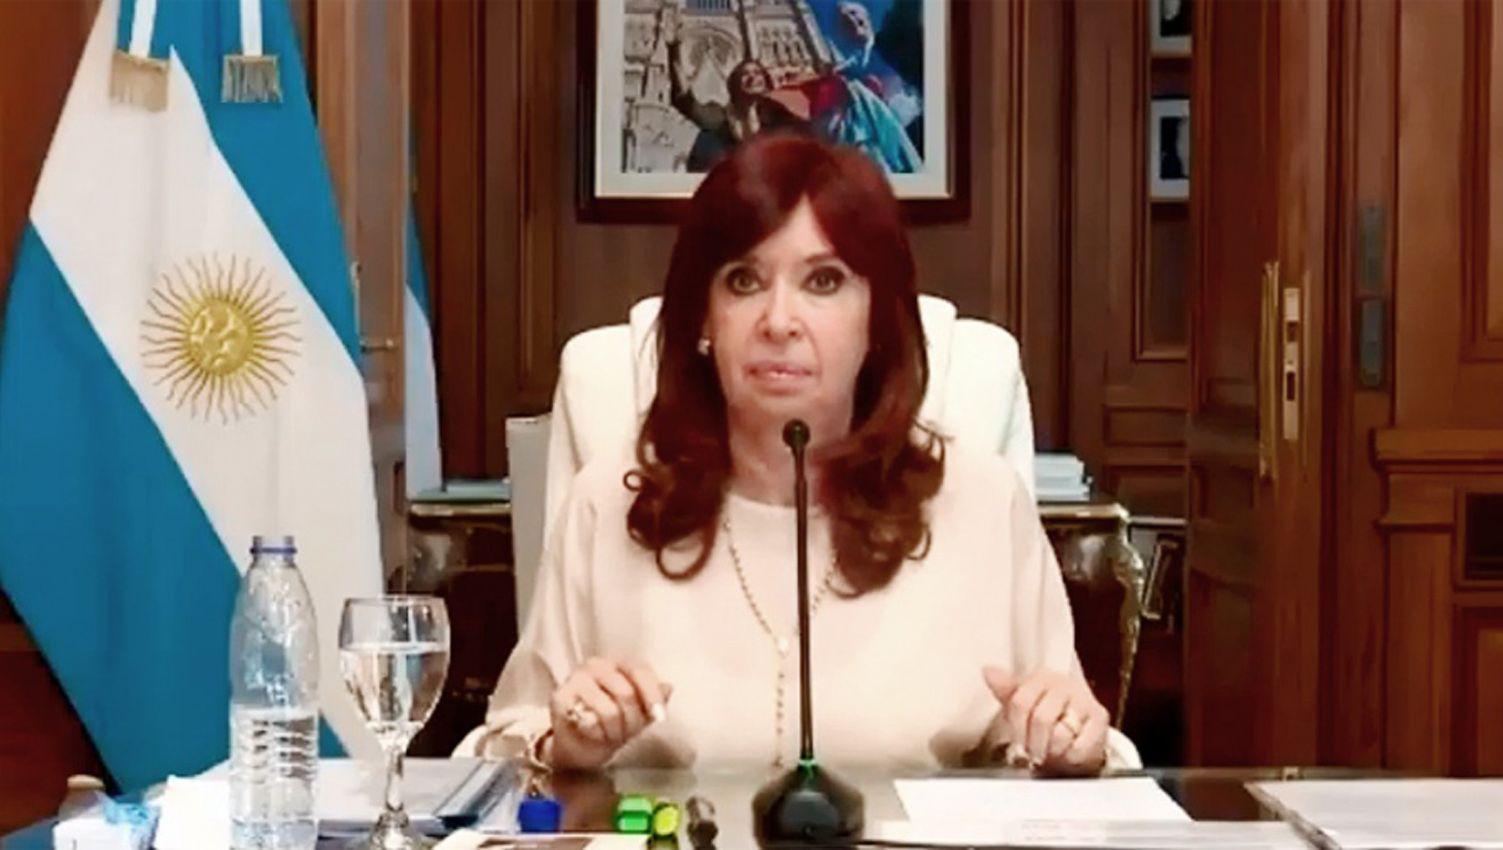 Cristina aludioacute a un sistema podrido y perverso y culpoacute al Poder Judicial